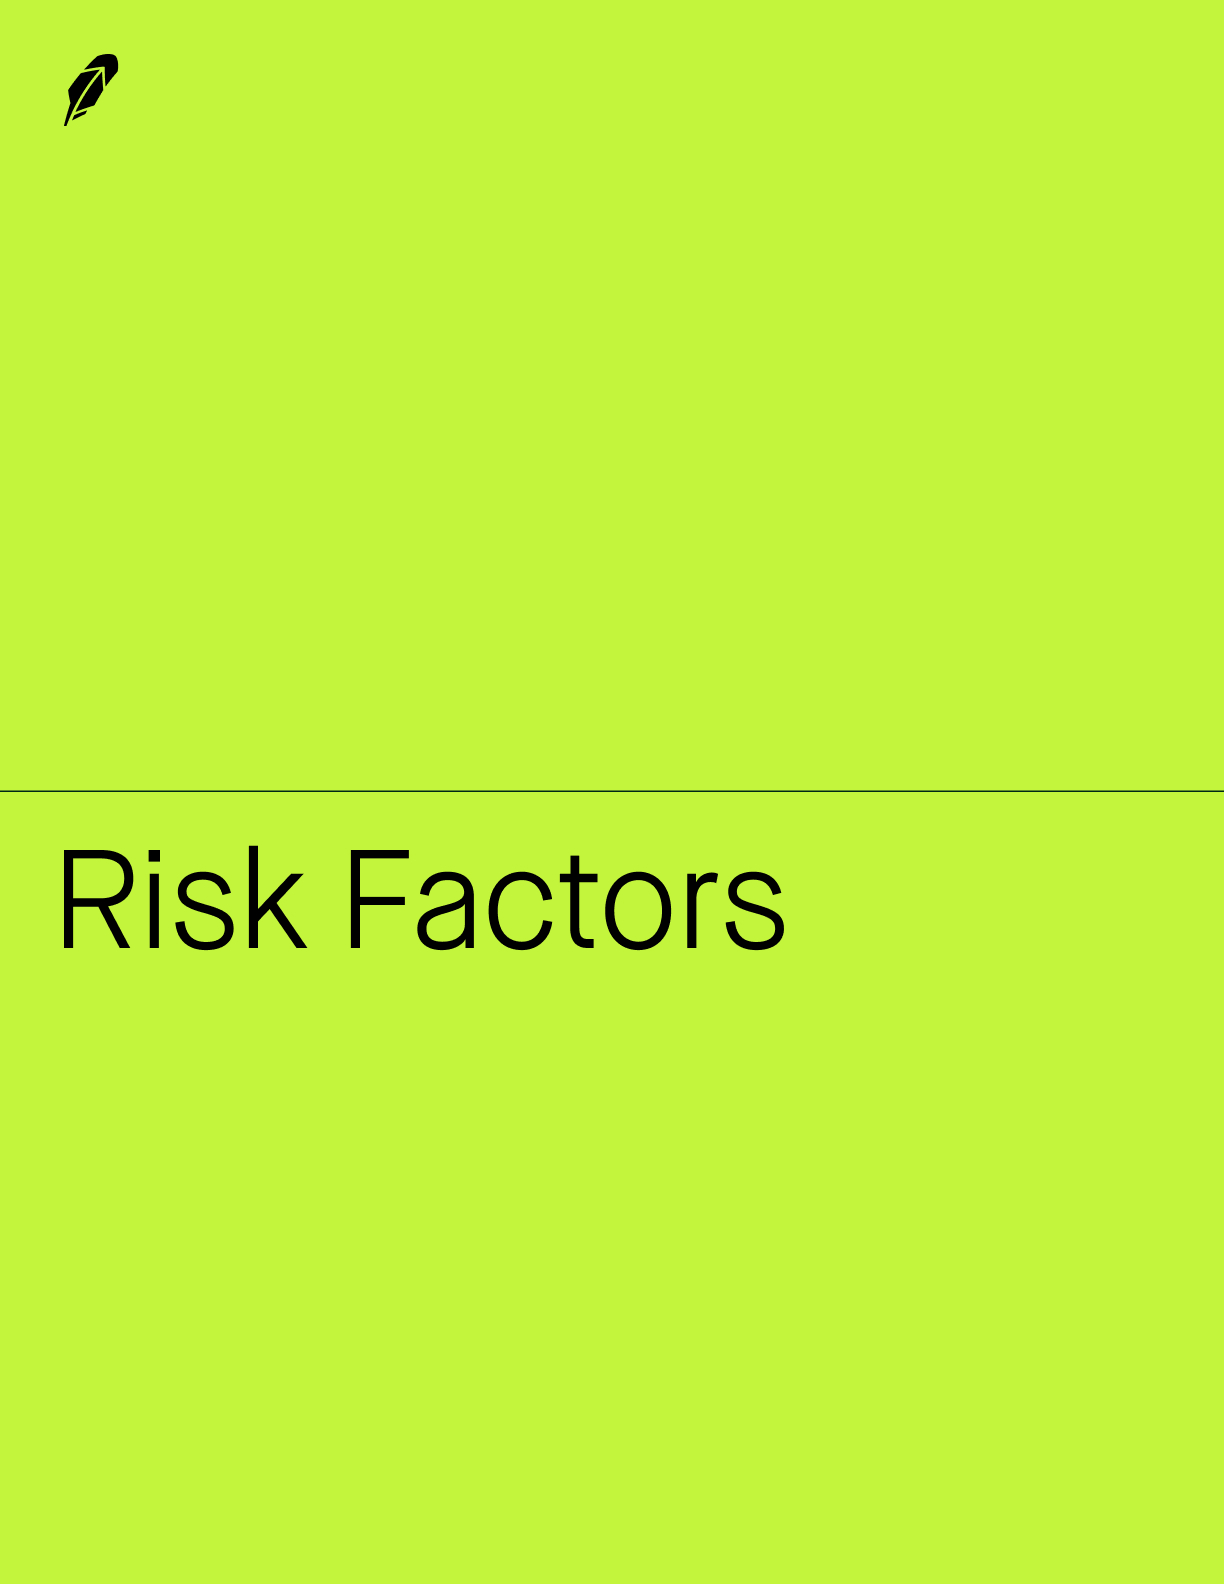 riskfactors1b1a.jpg